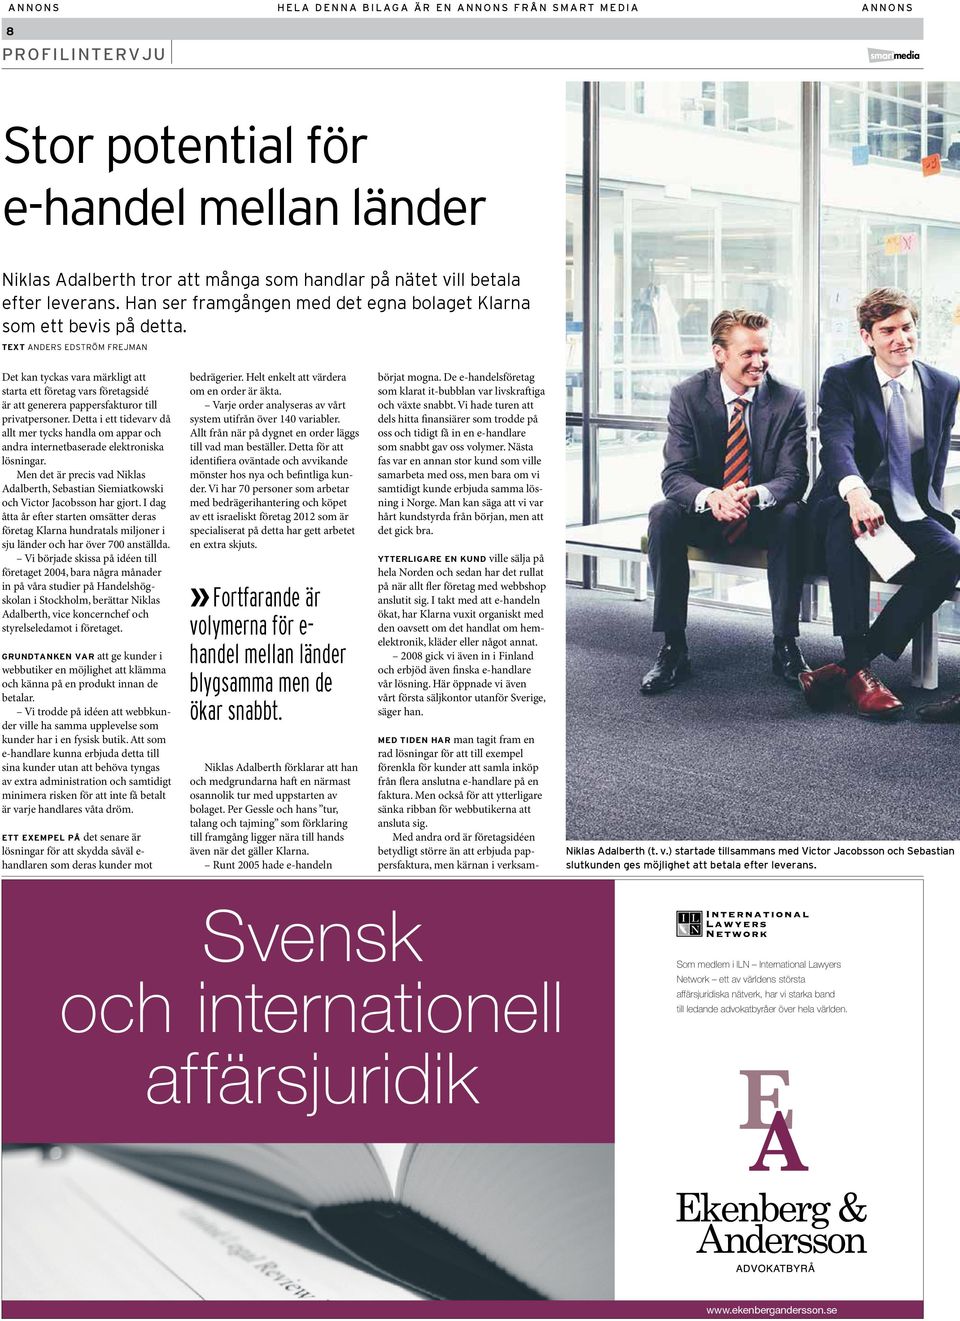 text Anders Edström Frejman Det kan tyckas vara märkligt att starta ett företag vars företagsidé är att generera pappersfakturor till privatpersoner.